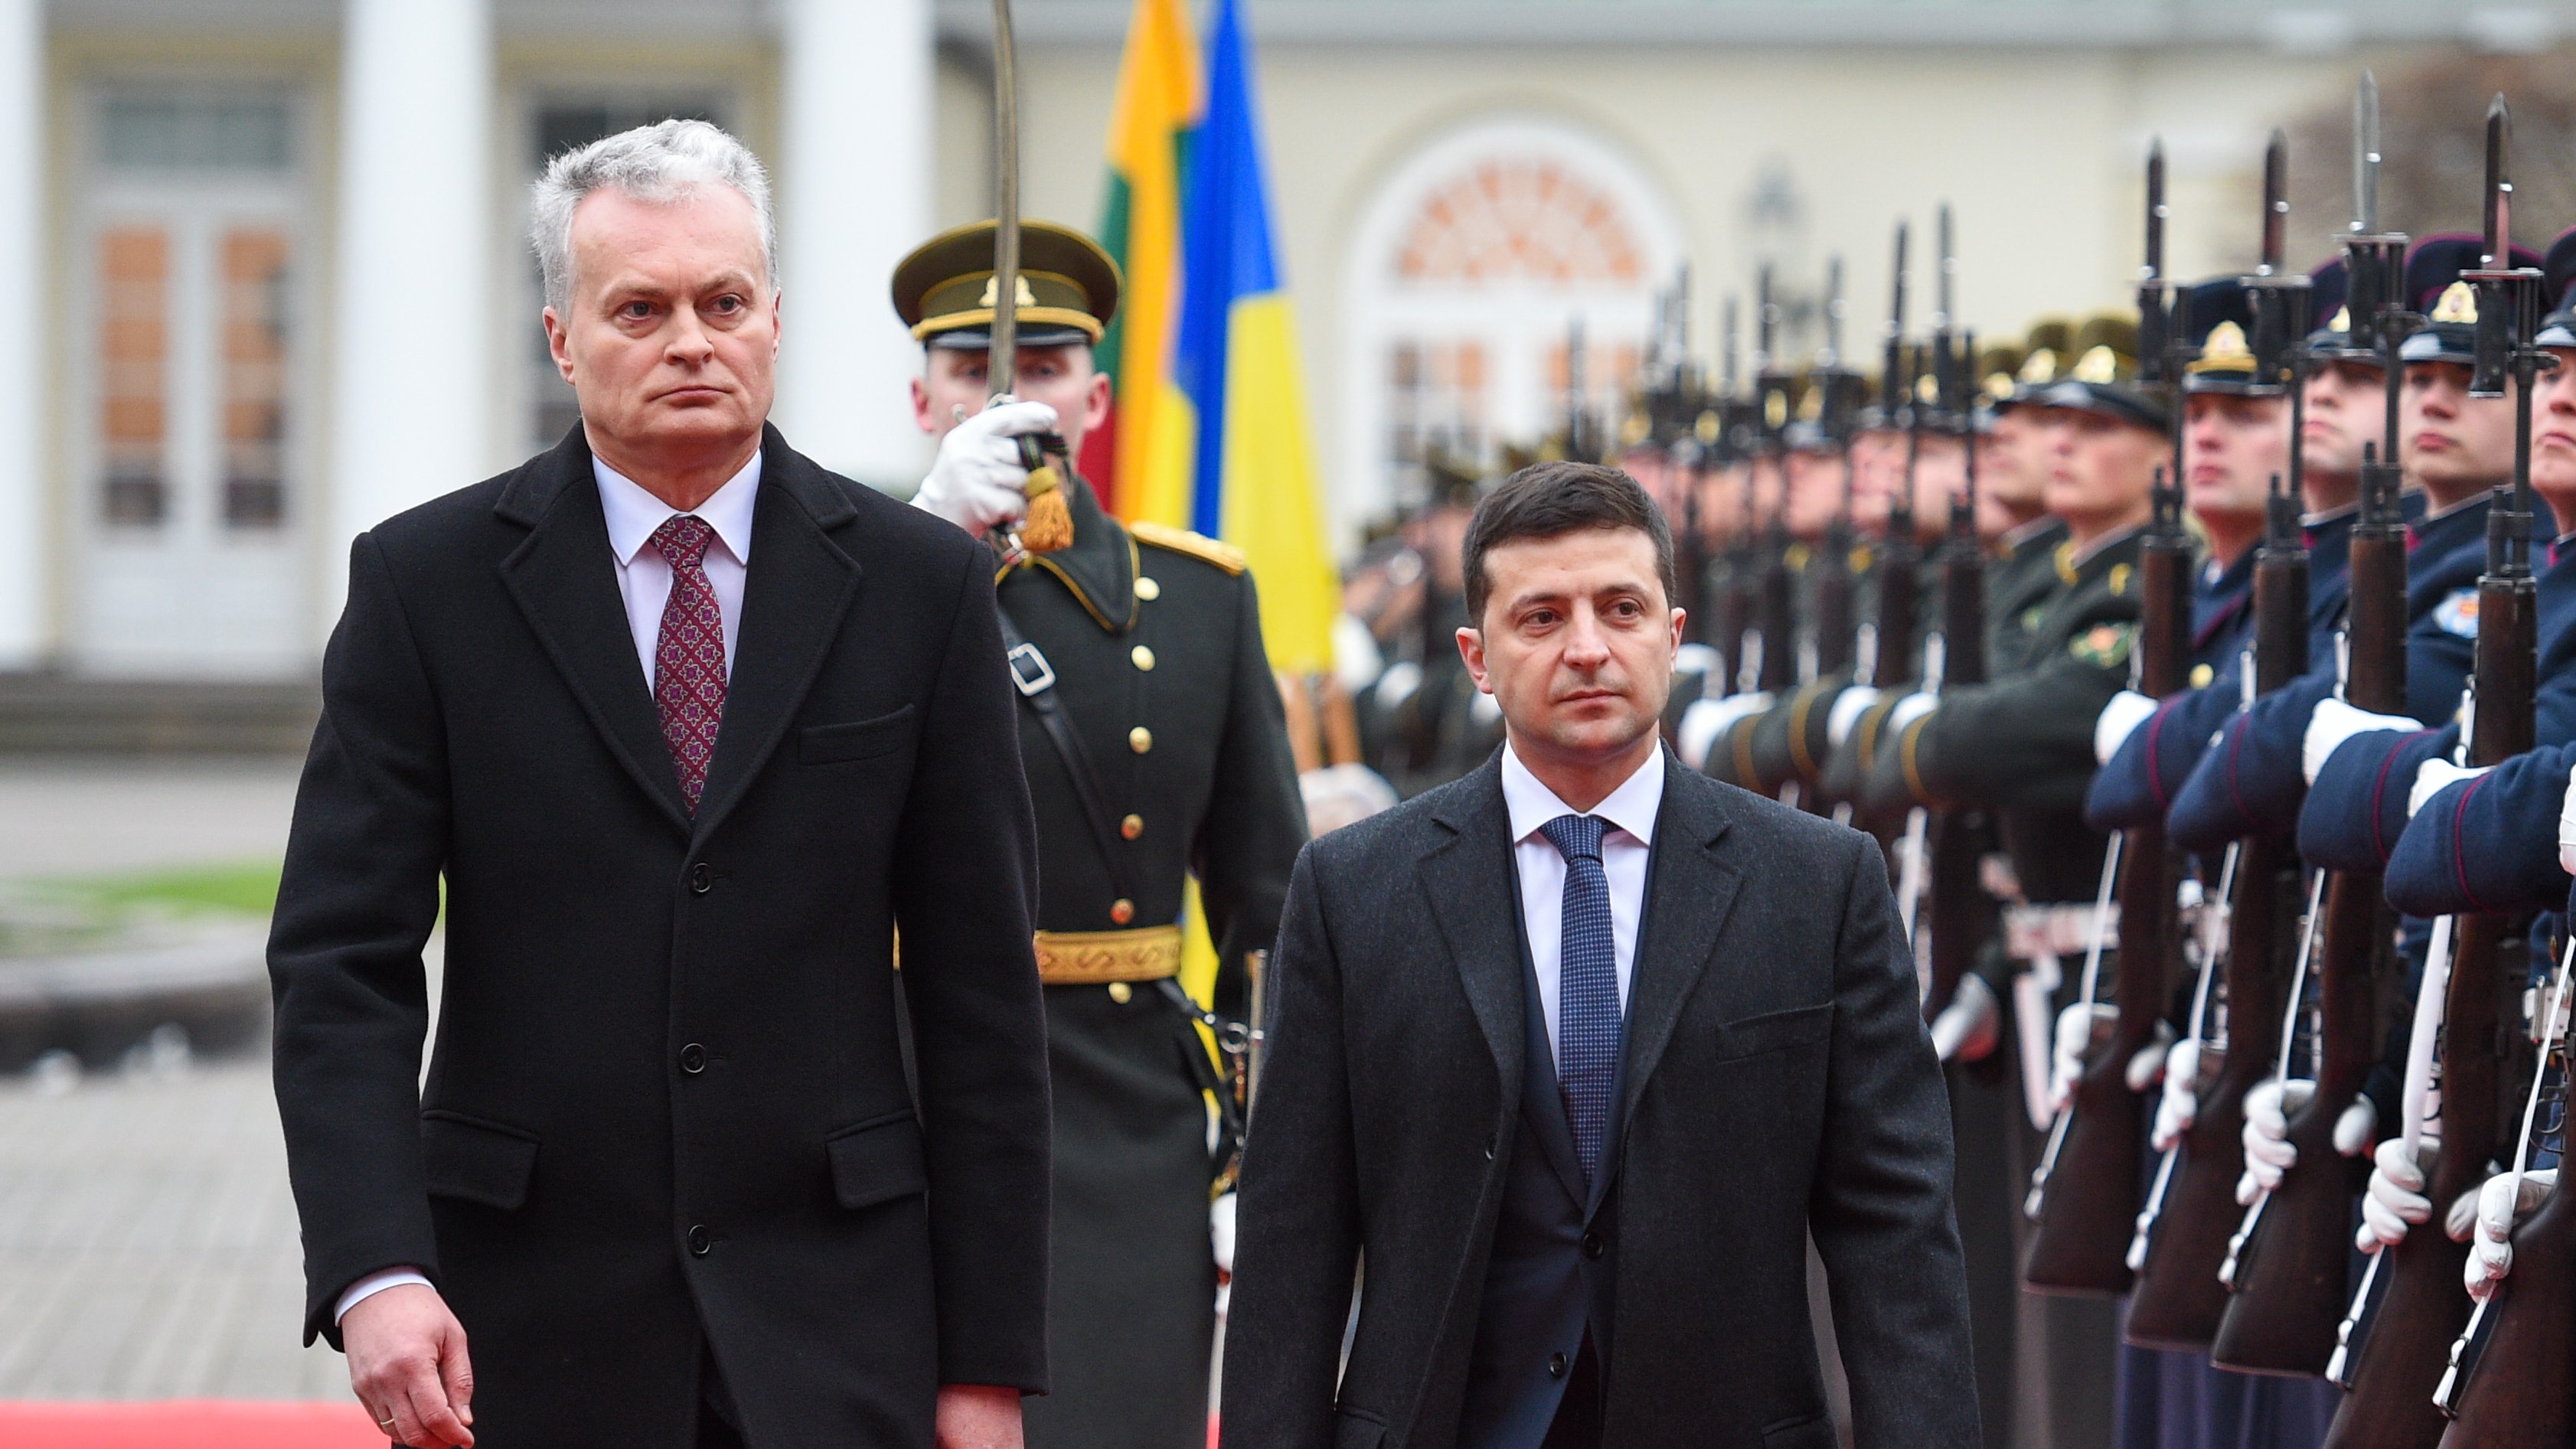 Історичне рішення, яке закріпило геополітичний вибір України — Науседа про курс України в НАТО